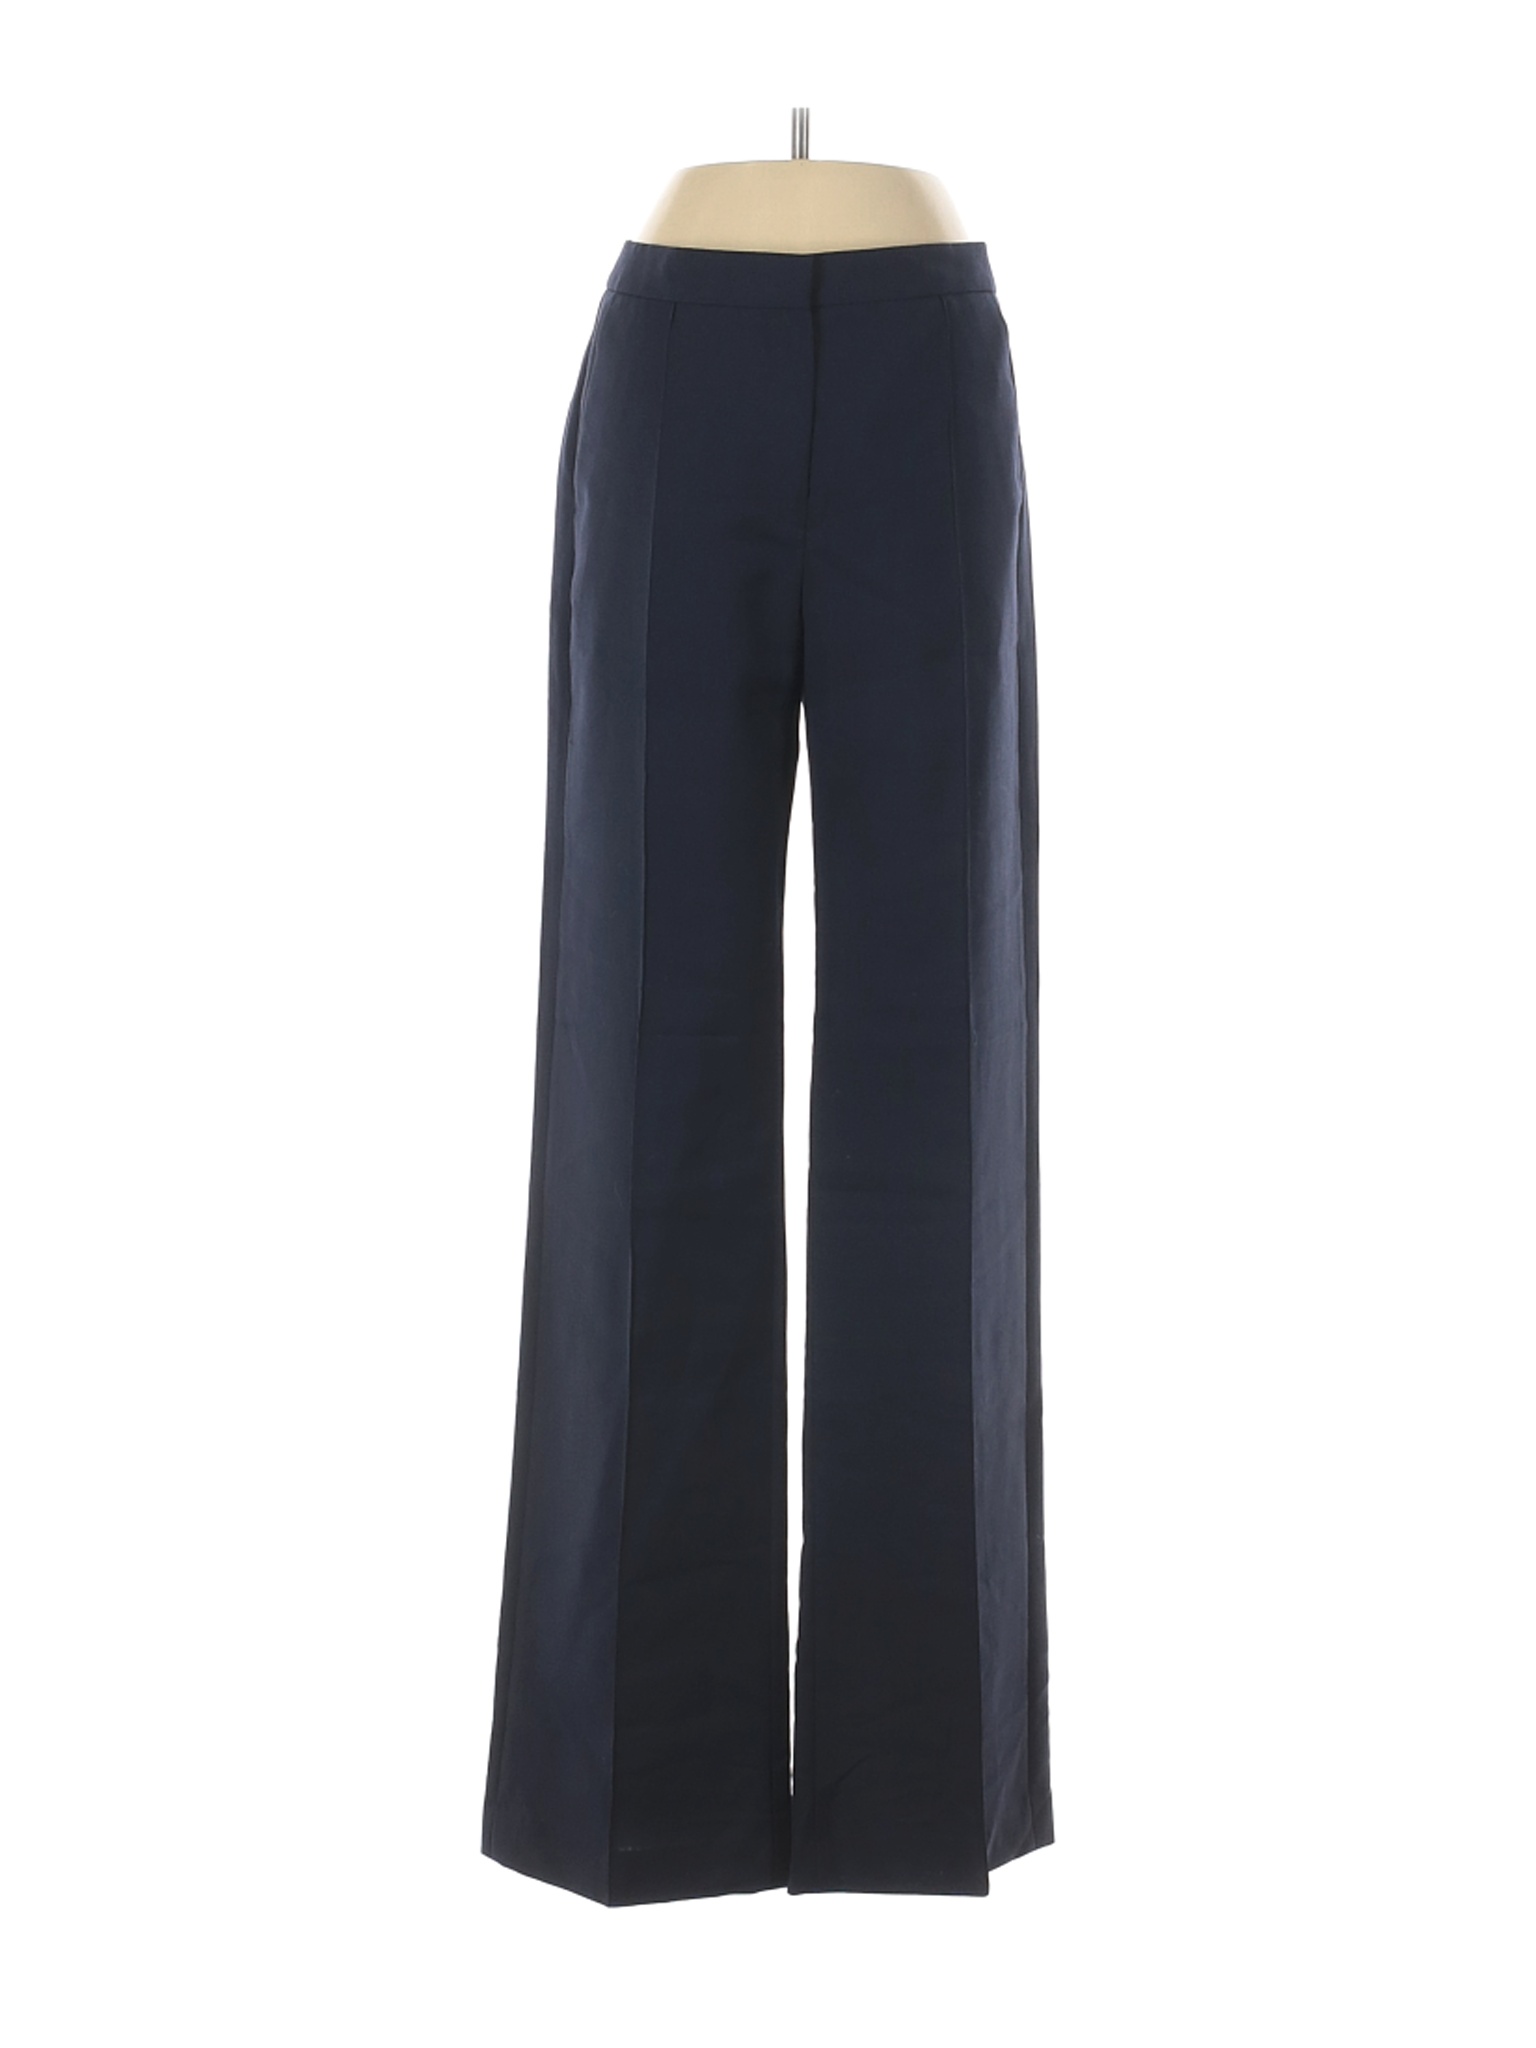 Reiss Women Blue Wool Pants 0 | eBay